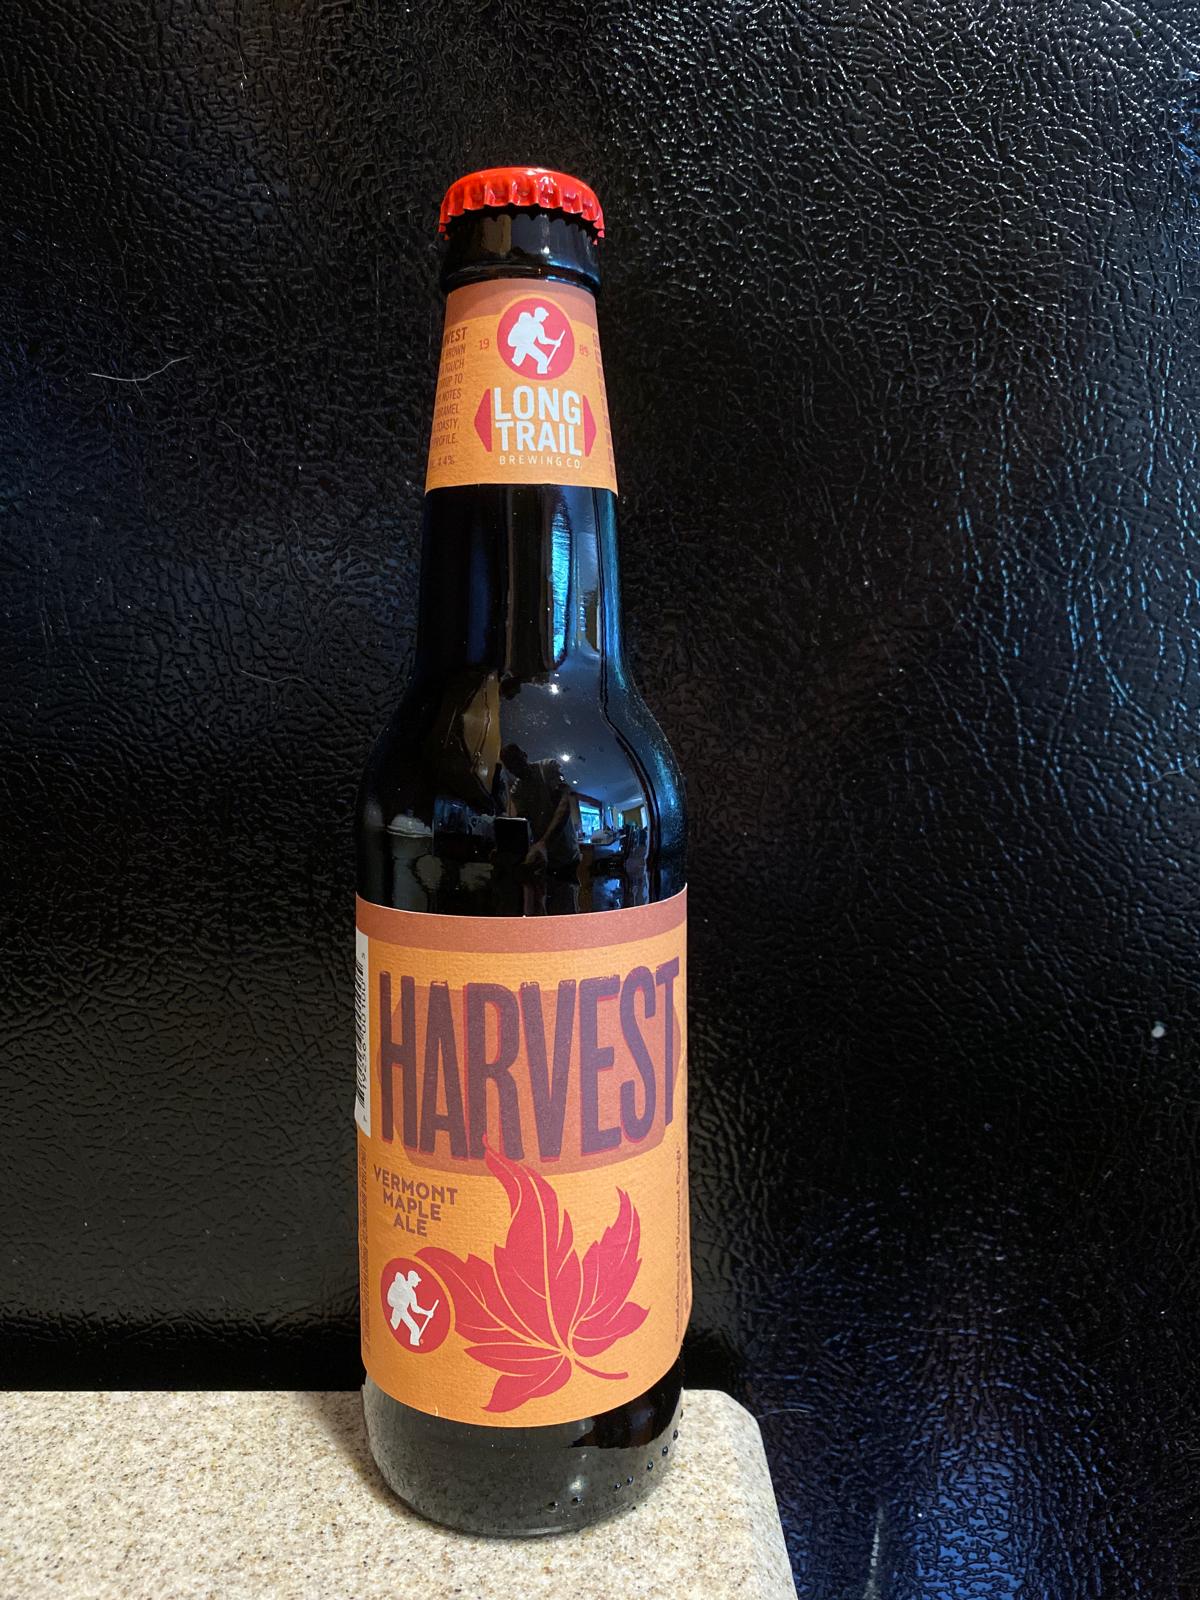 Harvest Vermont Maple Brown